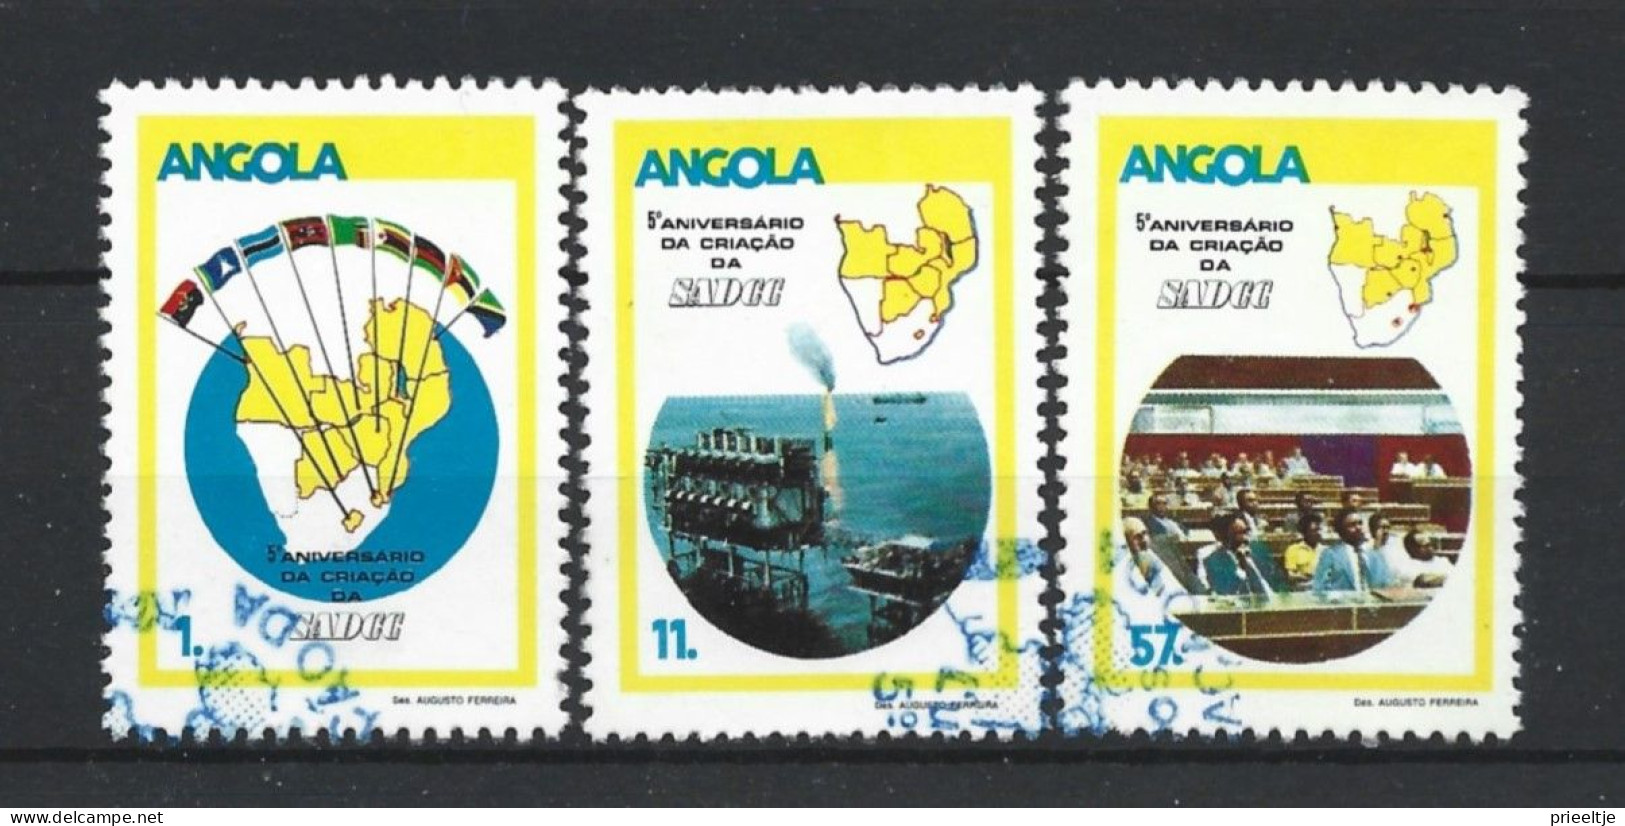 Angola 1985 SADCC 5th Anniv. Y.T. 696/698 (0) - Angola